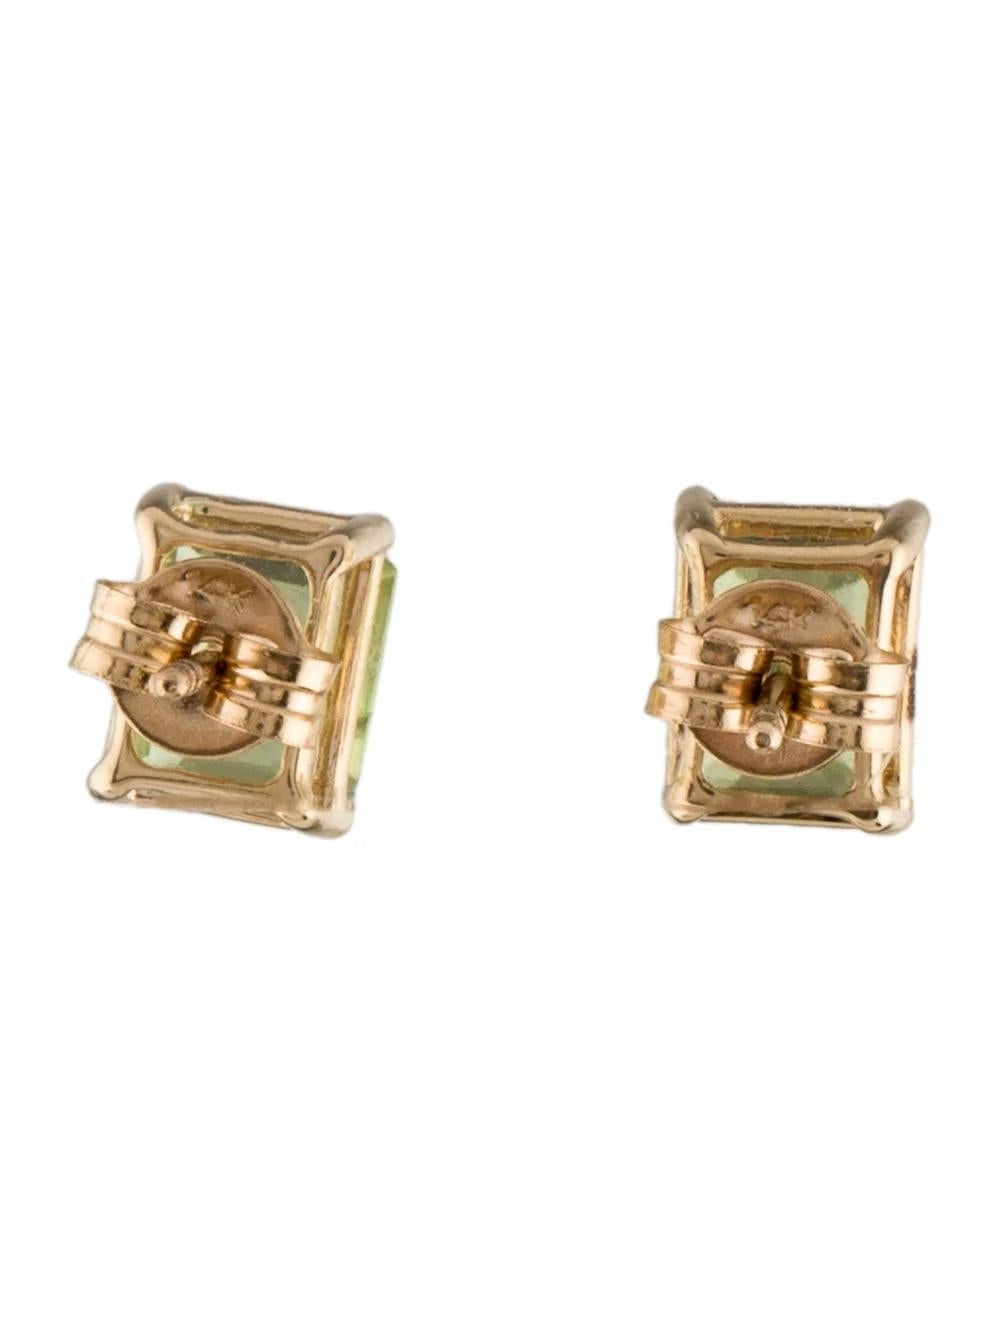 Emerald Cut 14K Peridot Stud Earrings 2.74ctw - Green Gemstone Fine Jewelry, Luxury For Sale